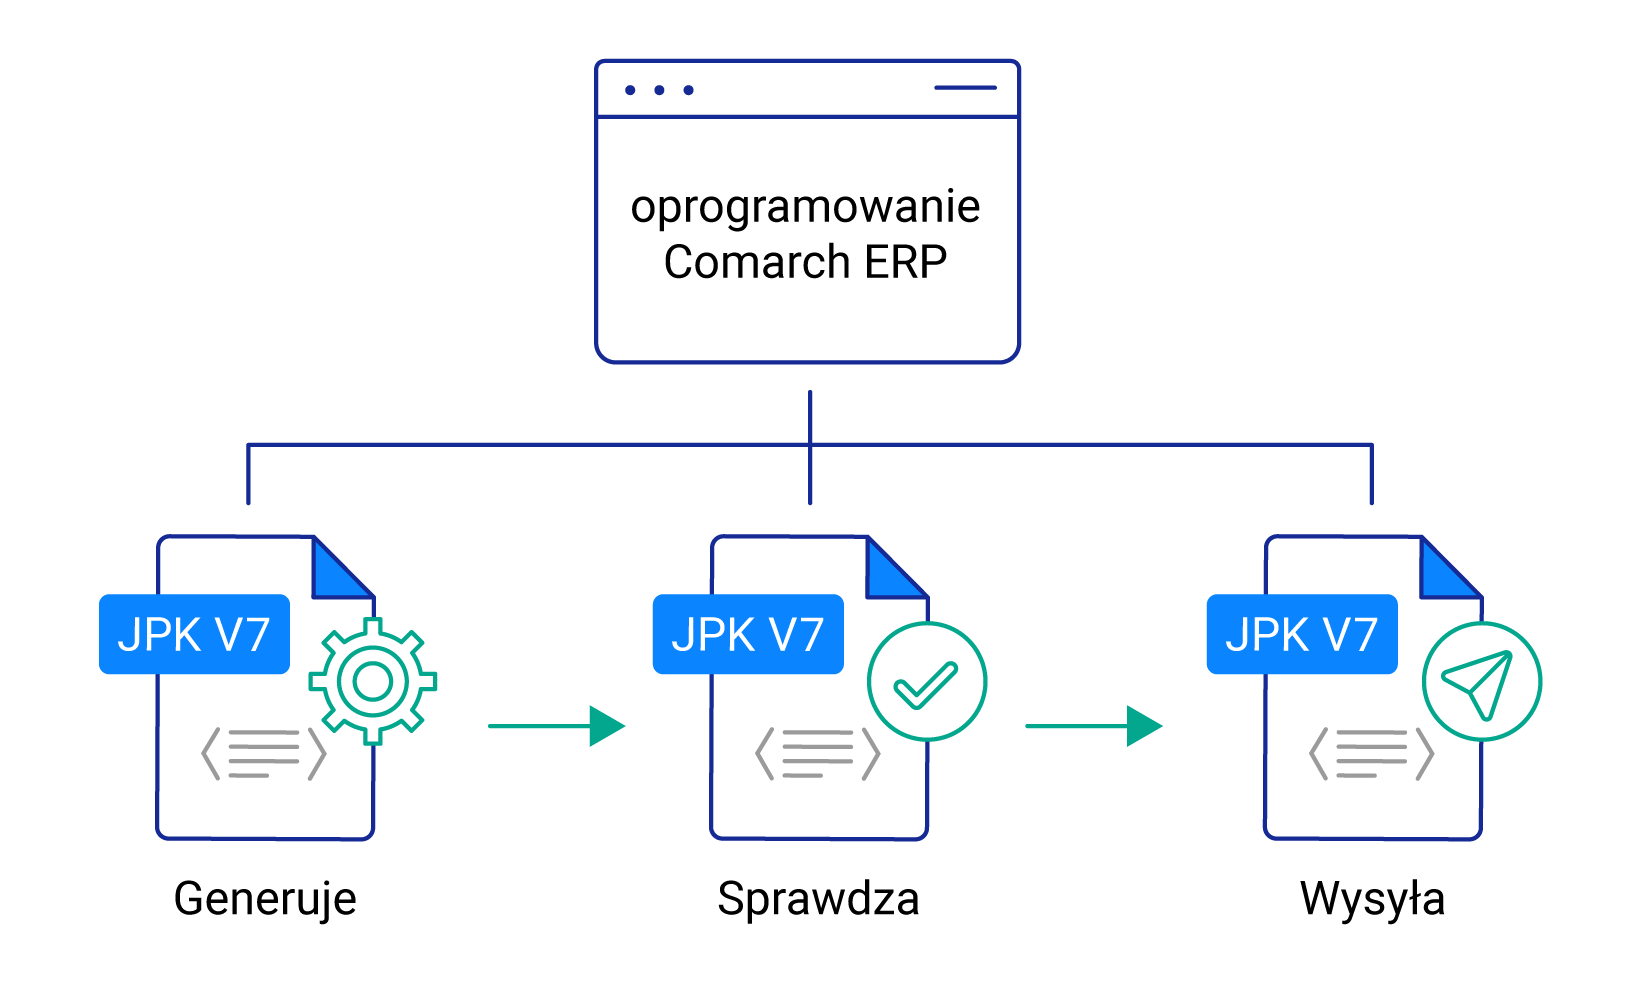 tworzenei, sprawdzenia, wysyłka nowego jednolitego pliku kontrolnego JPK V7 w oprogramowaniu Comarch ERP